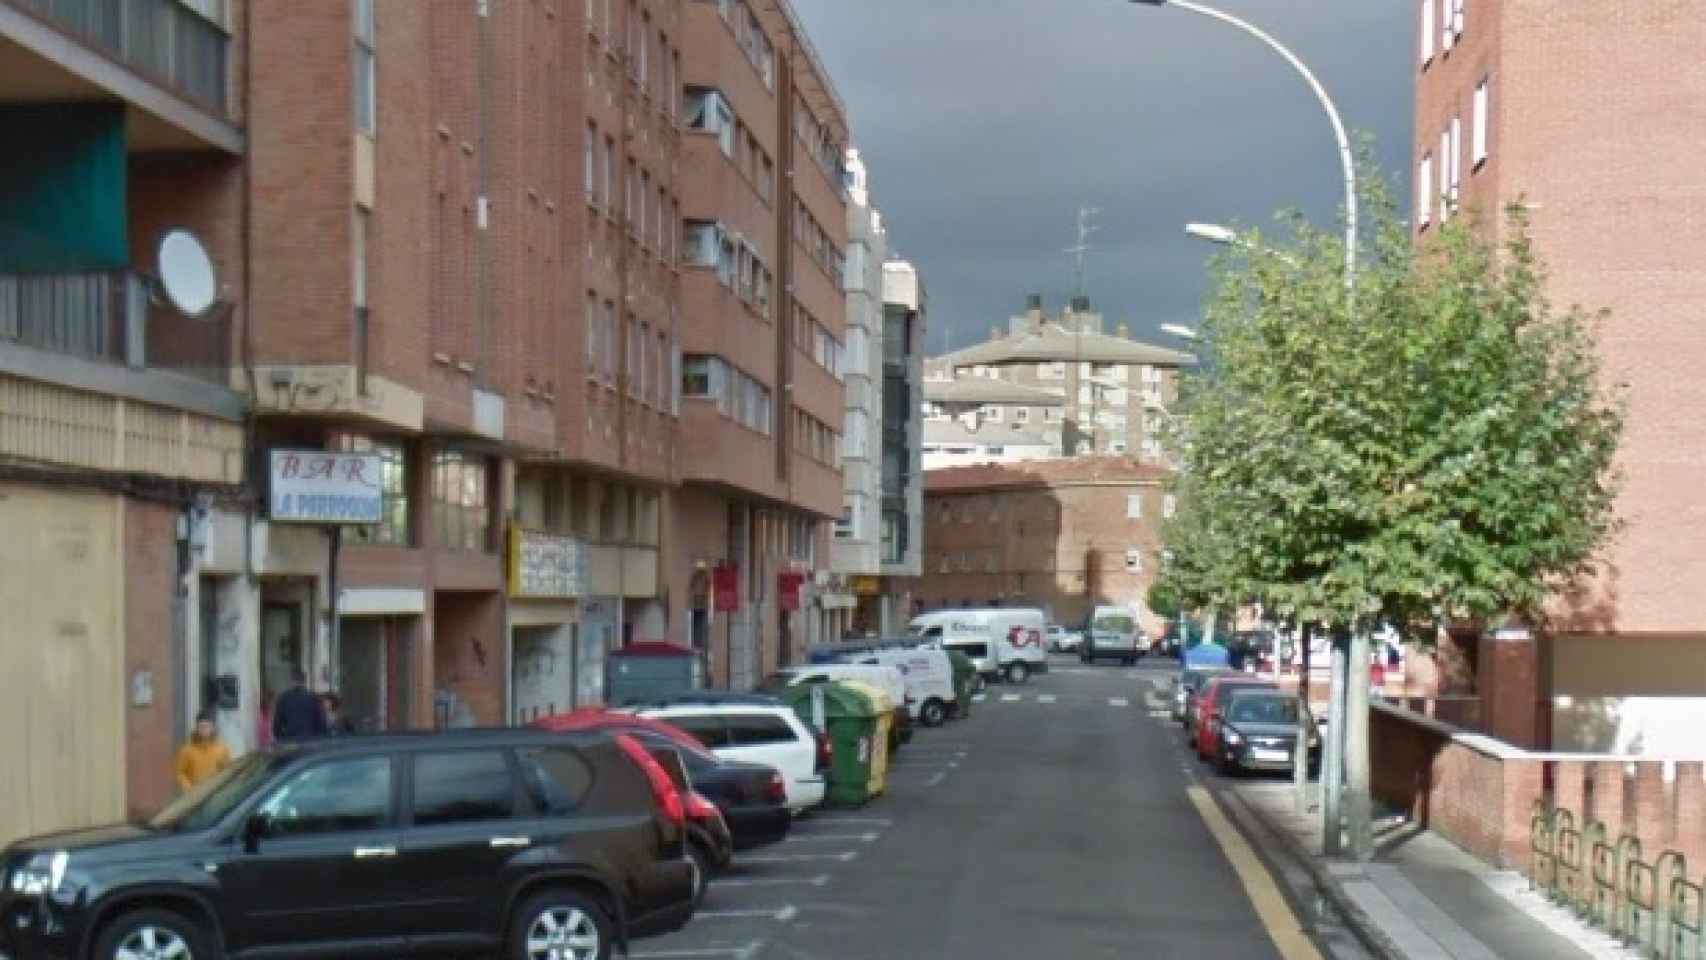 Calle Eras del Bosque en Palencia,  donde fue localizada la mujer sin vida